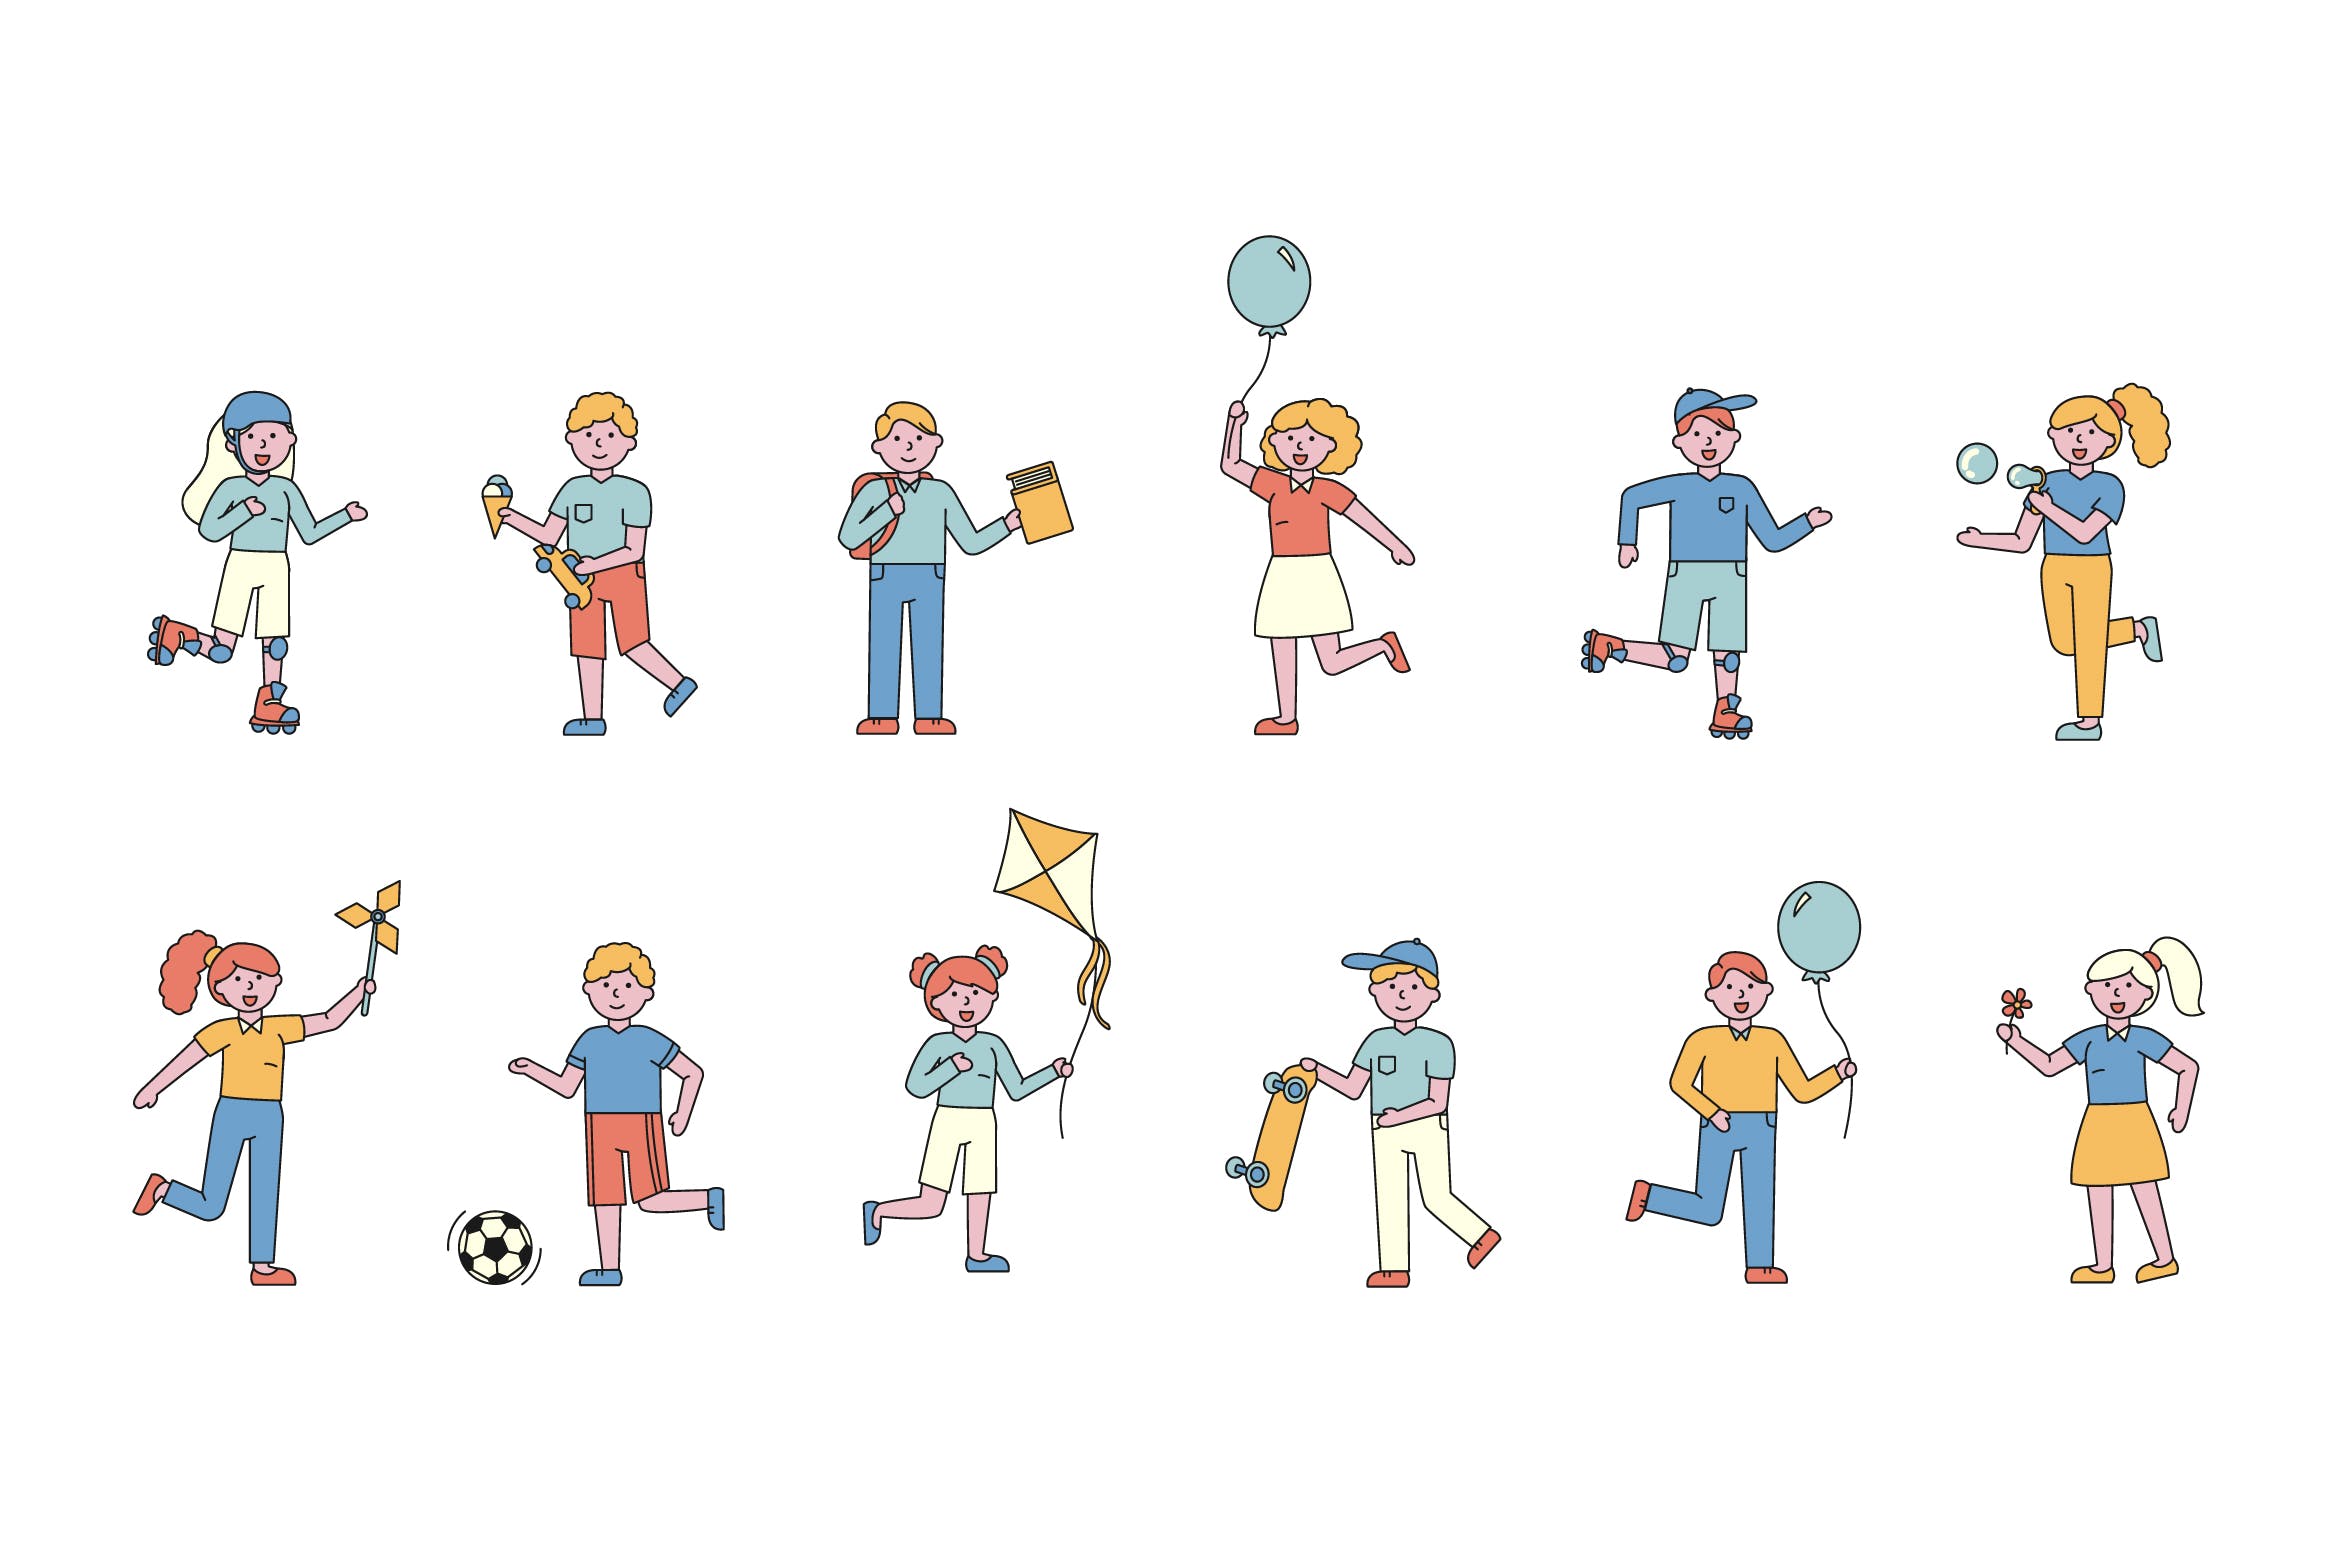 儿童乐园人物形象线条艺术矢量插画第一素材精选素材 Children Lineart People Character Collection插图